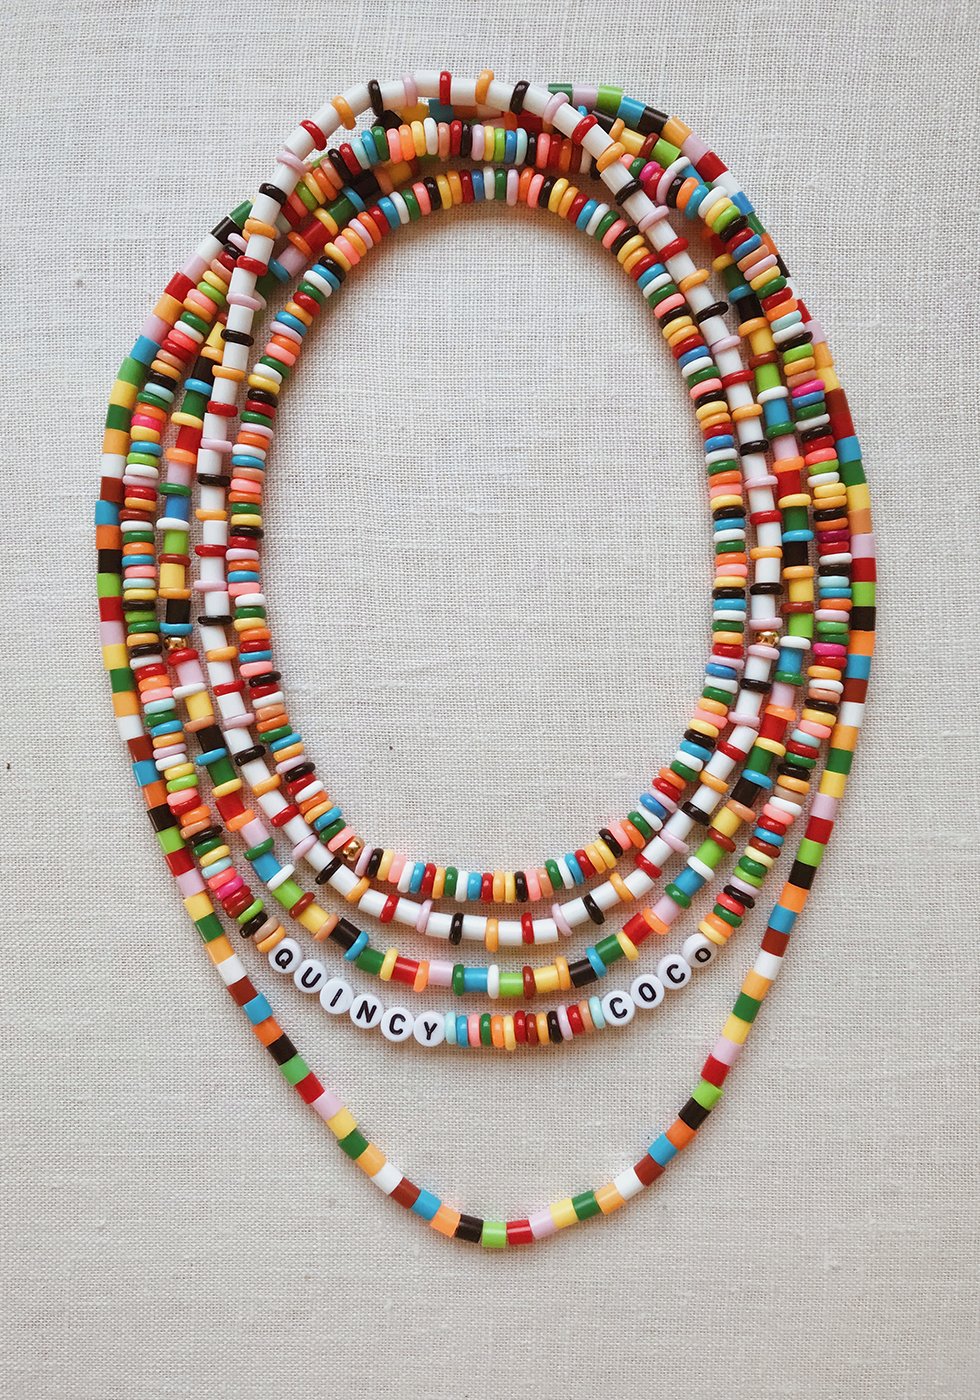 Perler Bead Necklace Patterns | vlr.eng.br